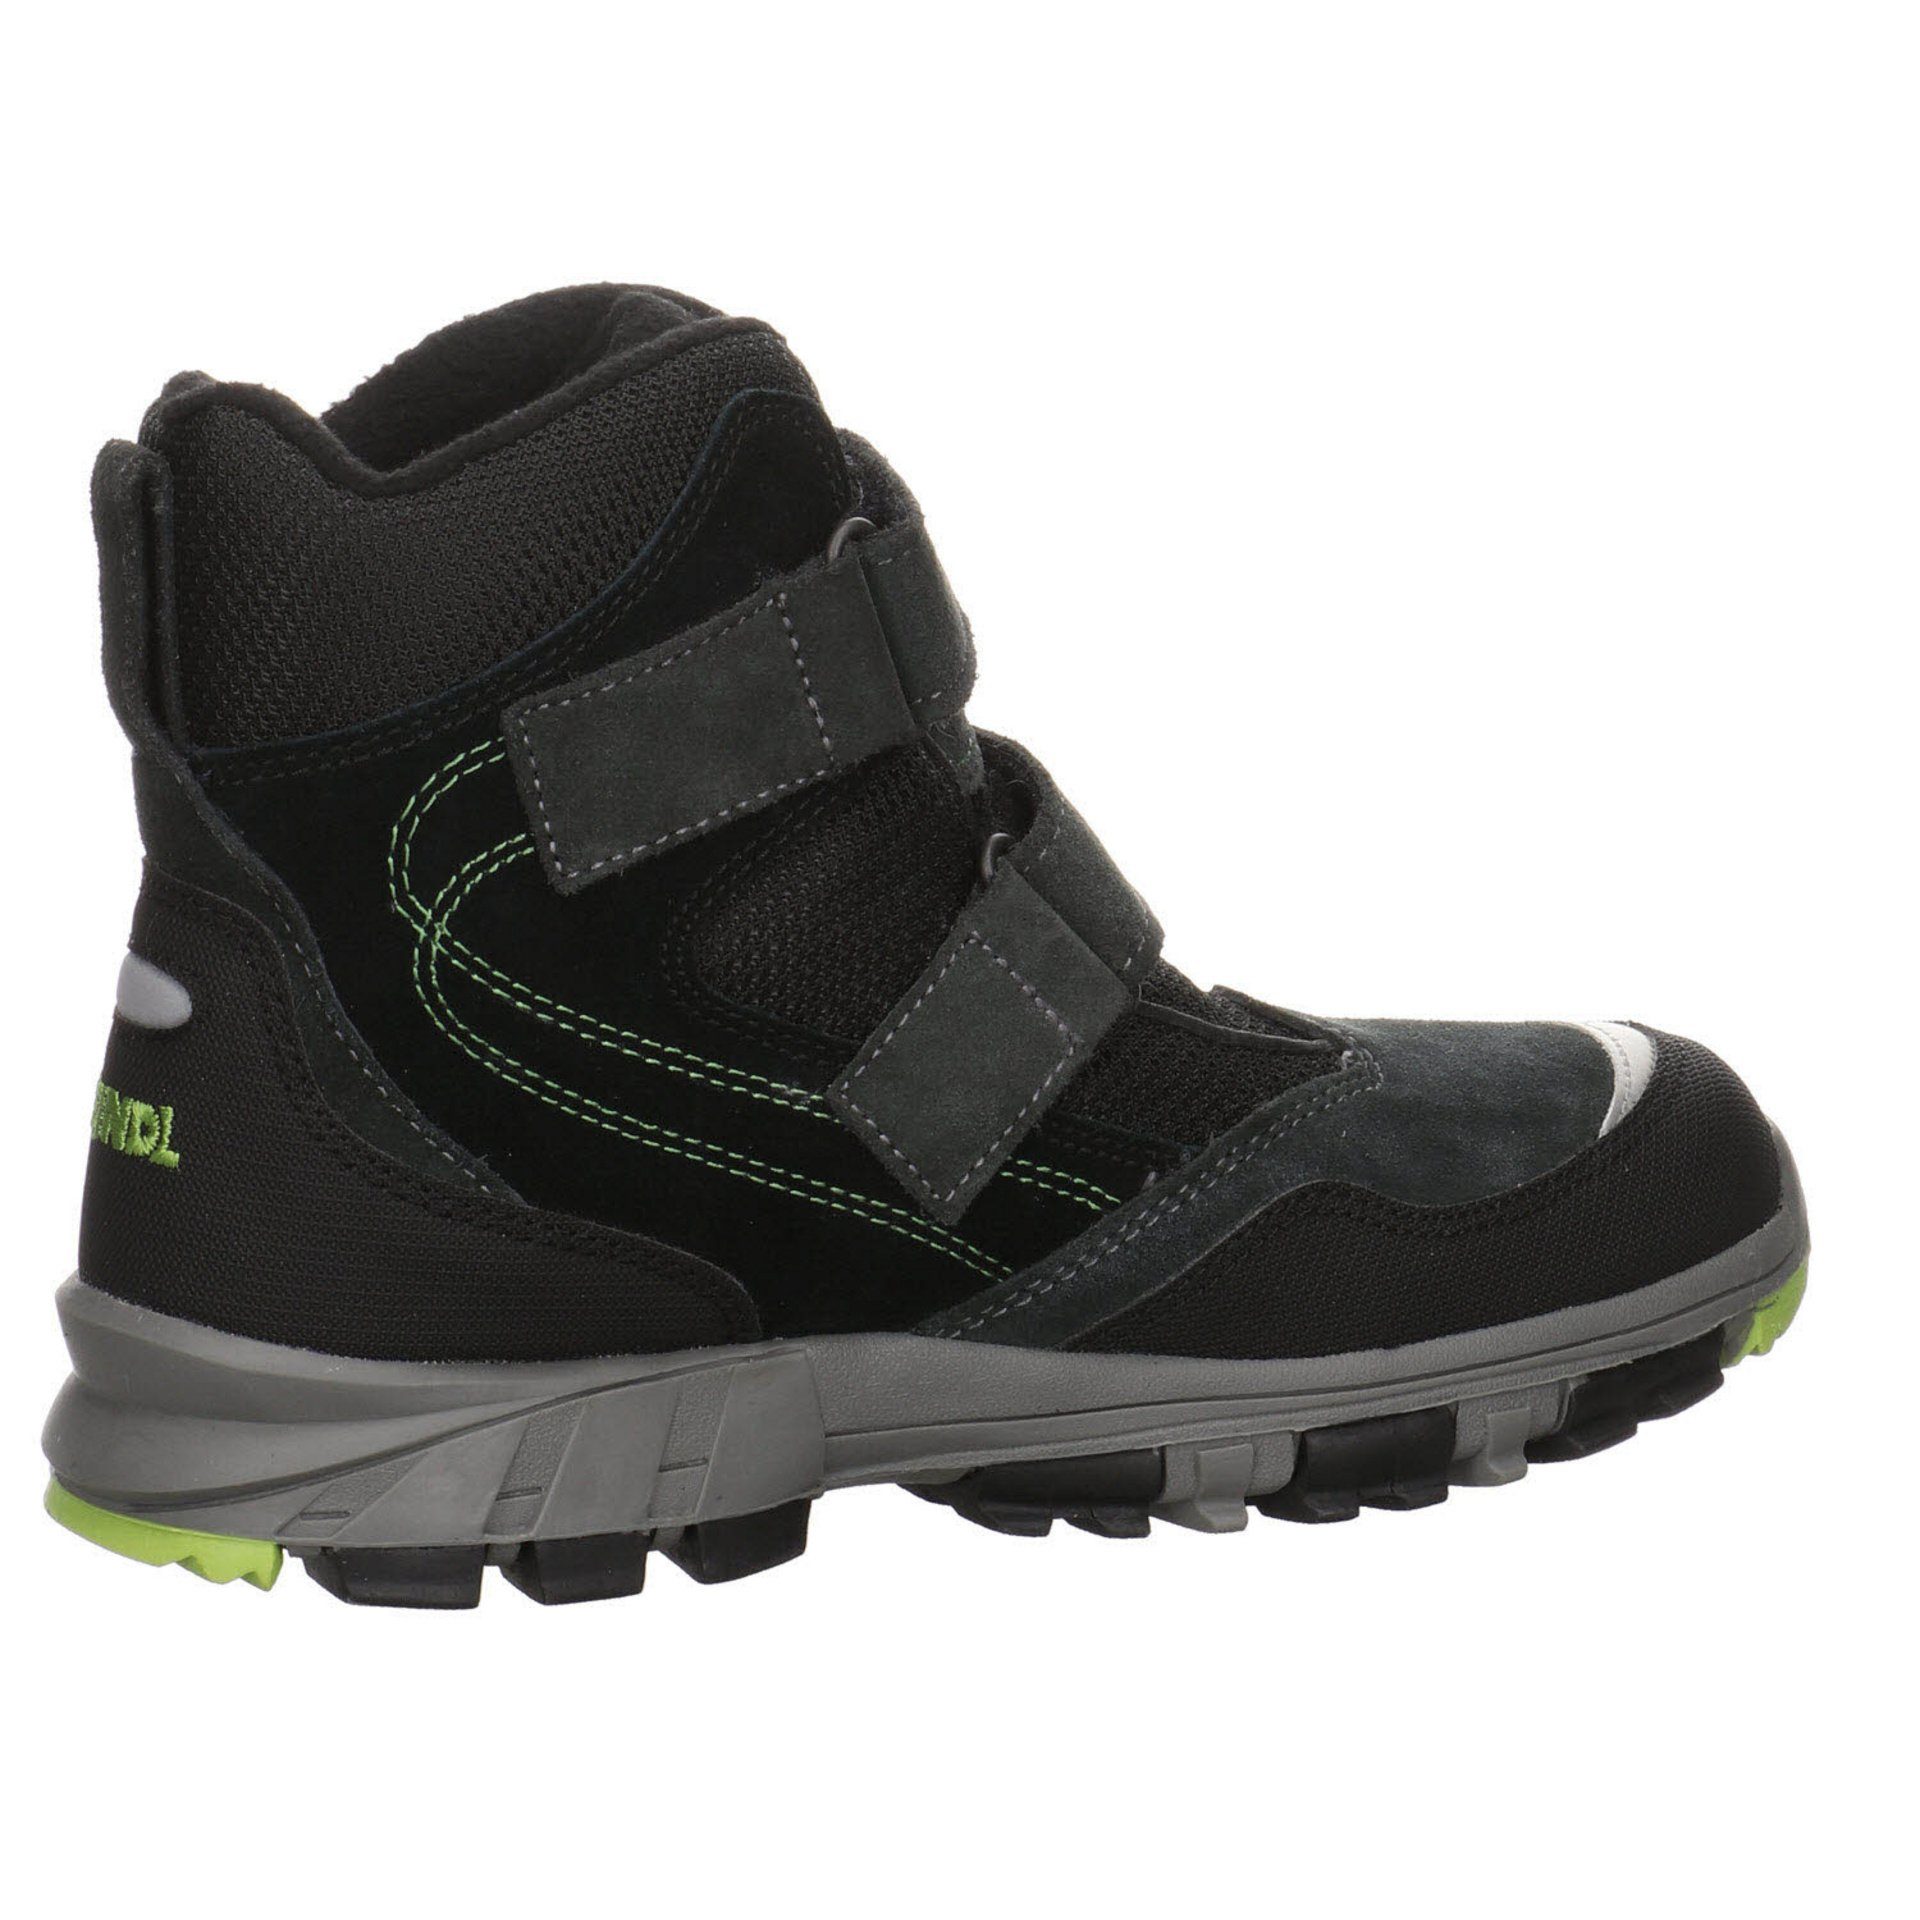 Schuhe Polar Junior Boots Fox Stiefel Stiefel Jungen Meindl Leder-/Textilkombination